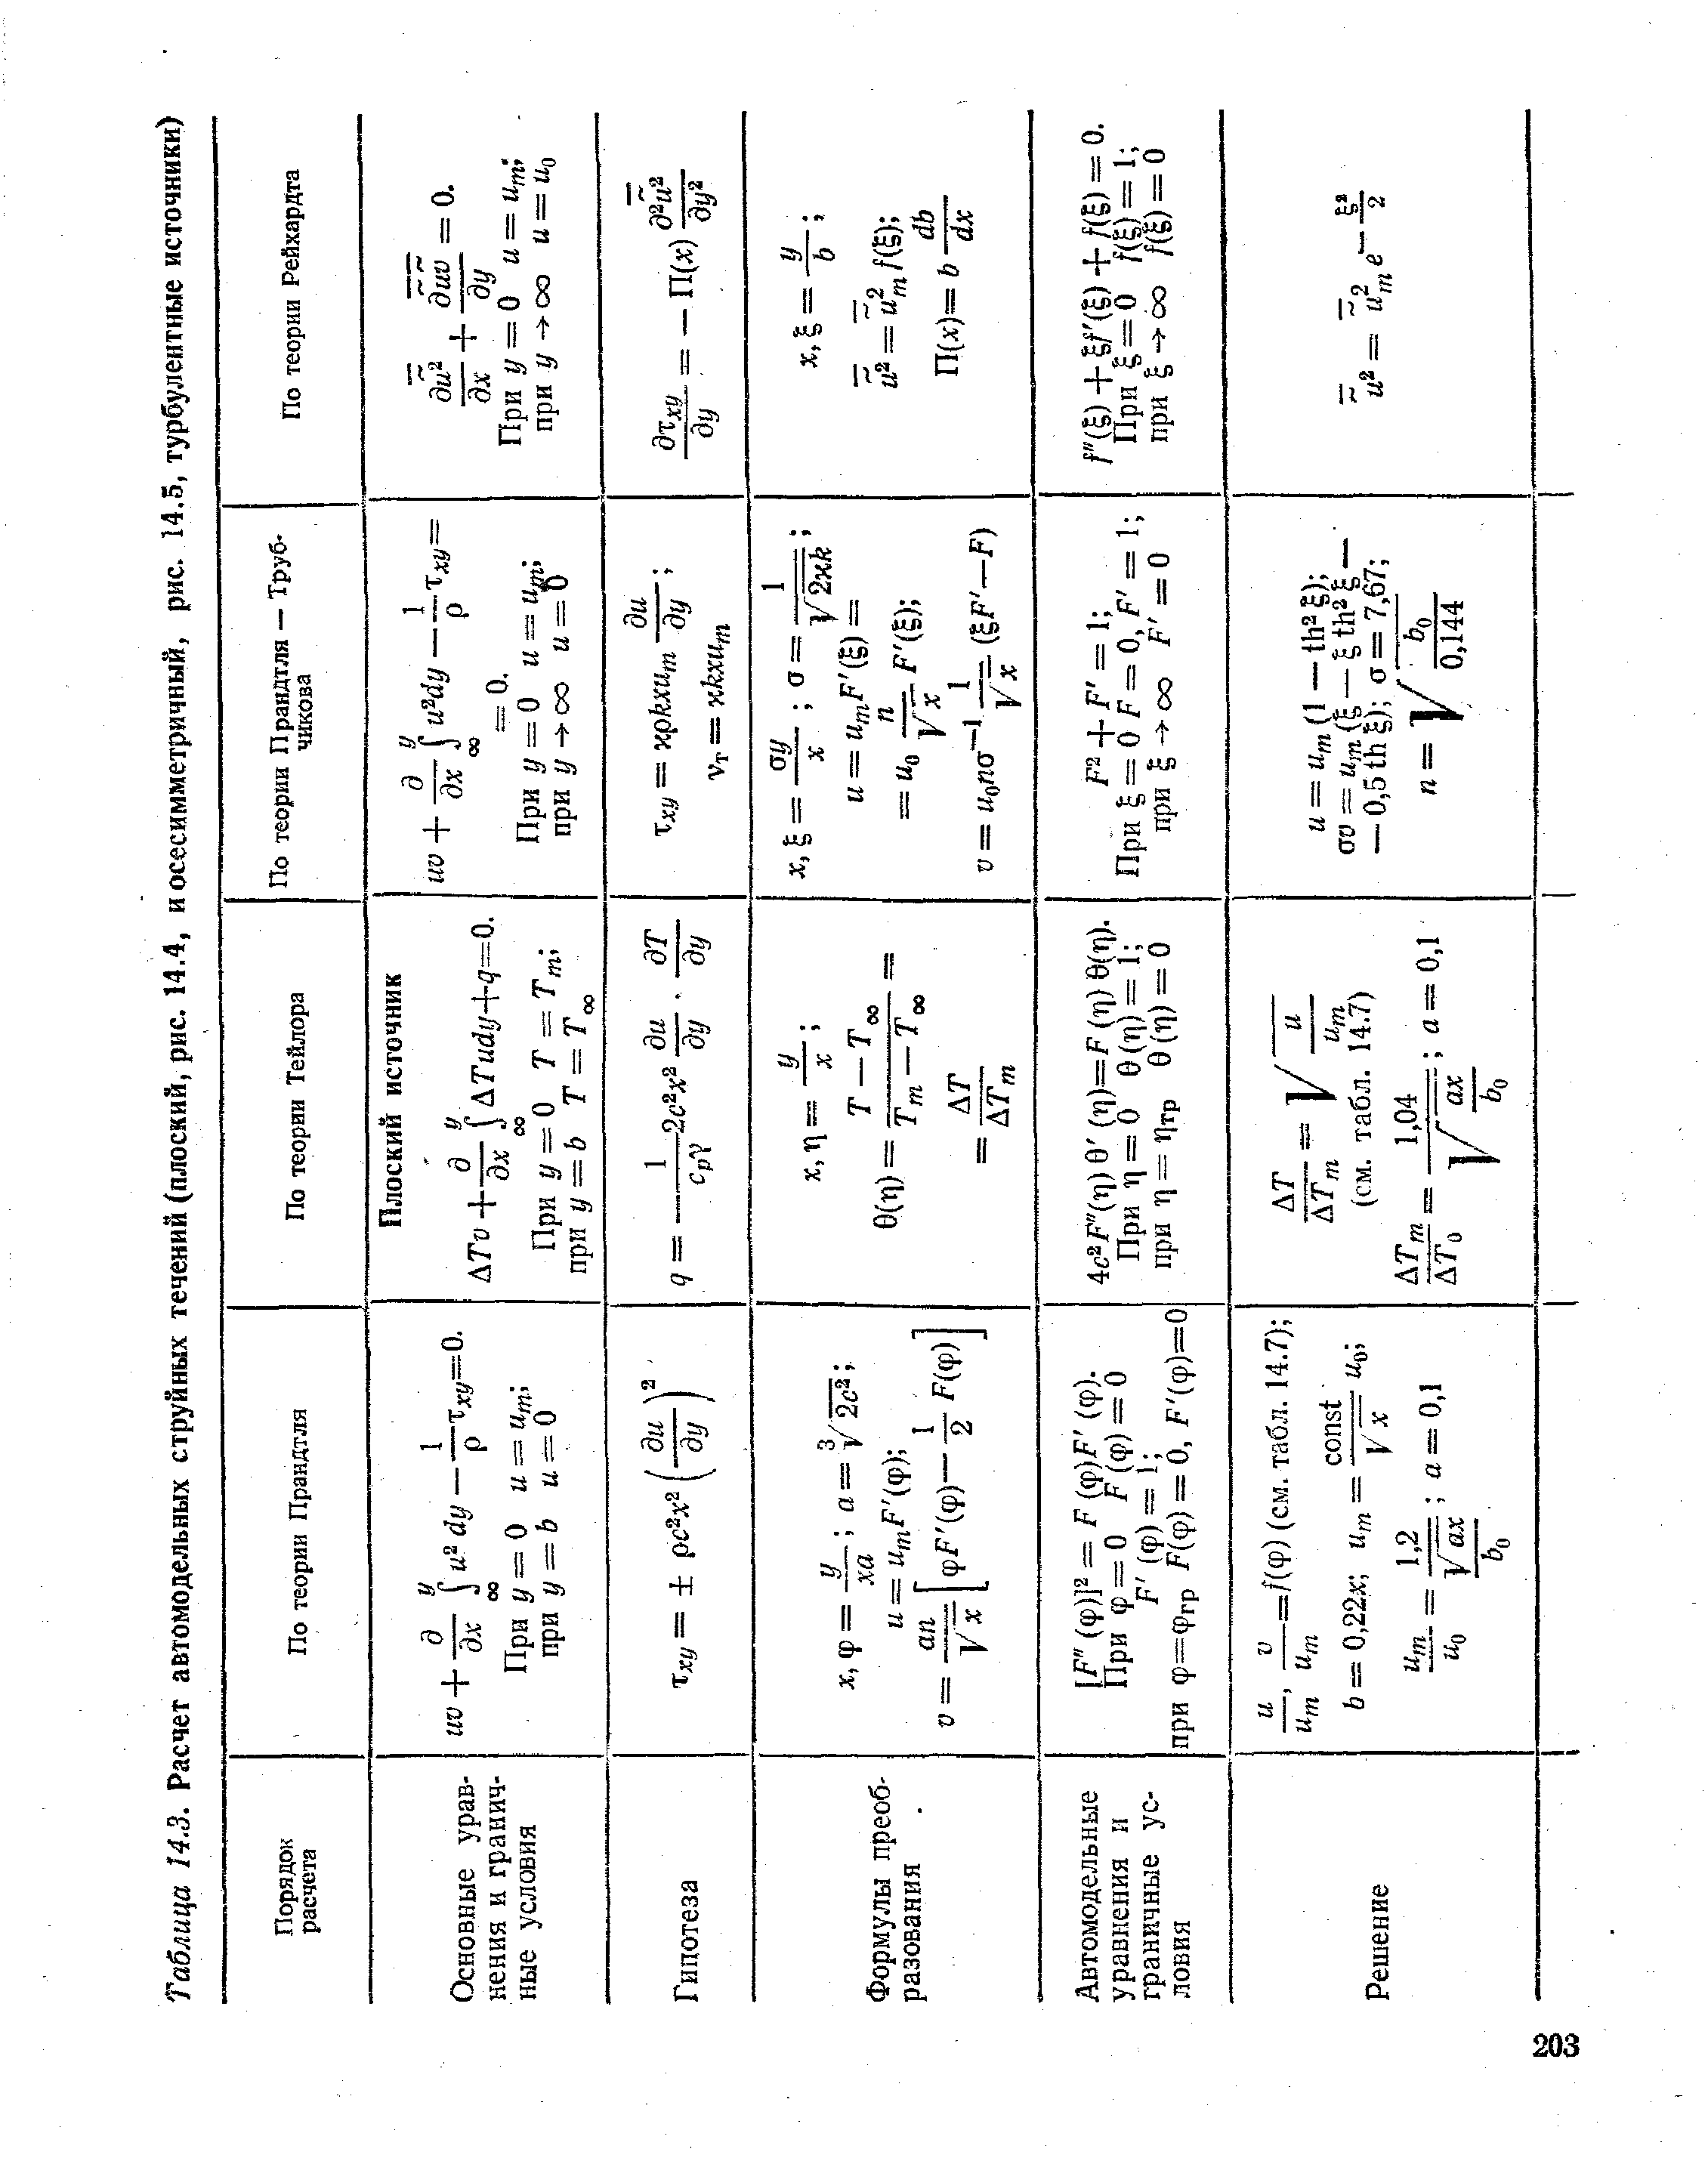 Таблица 14.3. Расчет автомодельных струйных течений (плоский, рис. 14.4, и осесимметричный, рис. 14.5, турбулентные источники)
